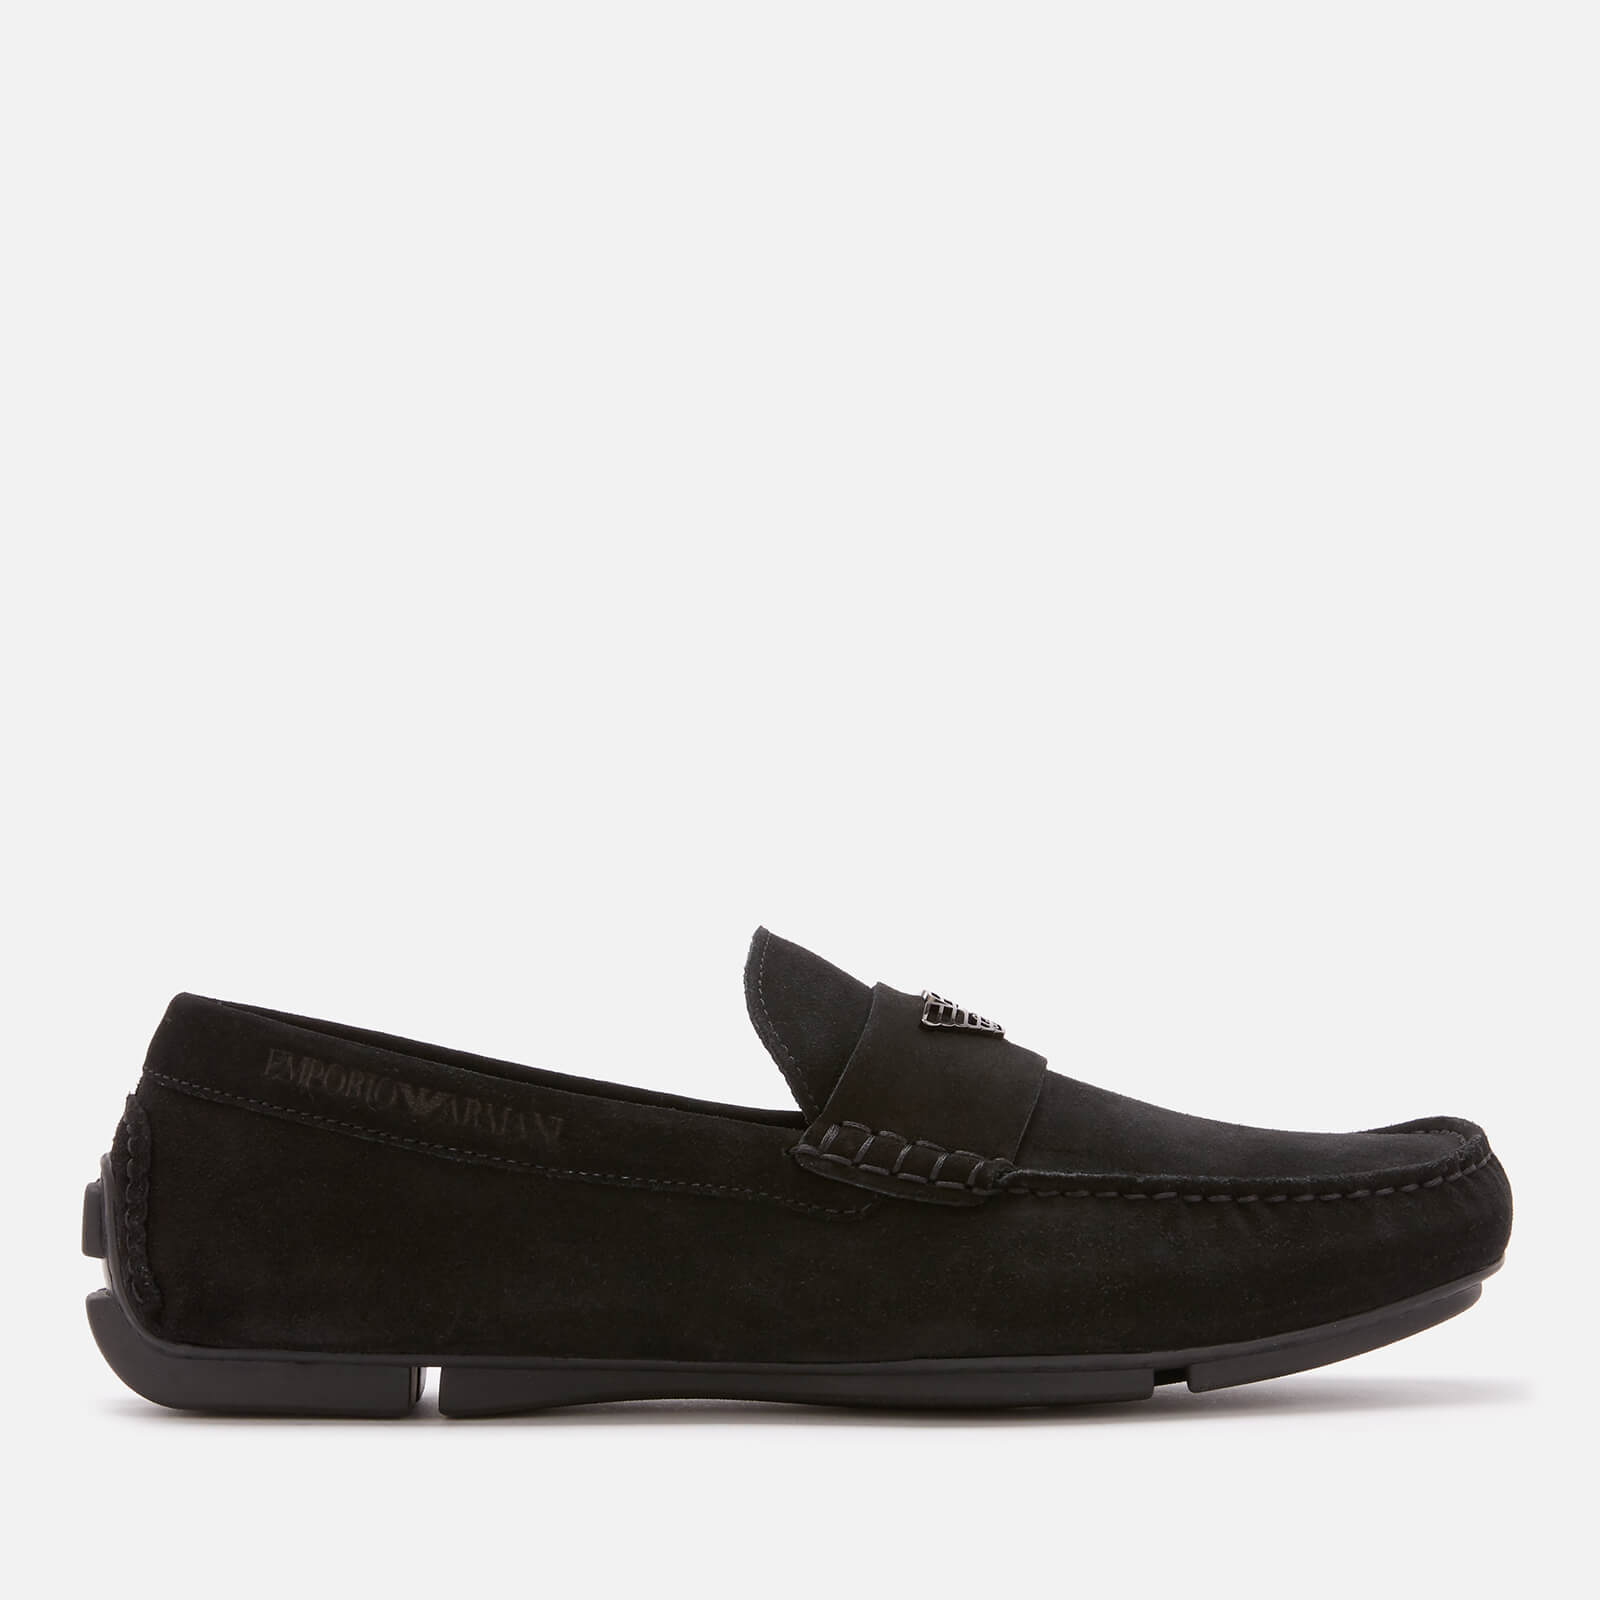 Emporio Armani Men's Zinos Suede Driver Shoes - Black - UK 7 - Black